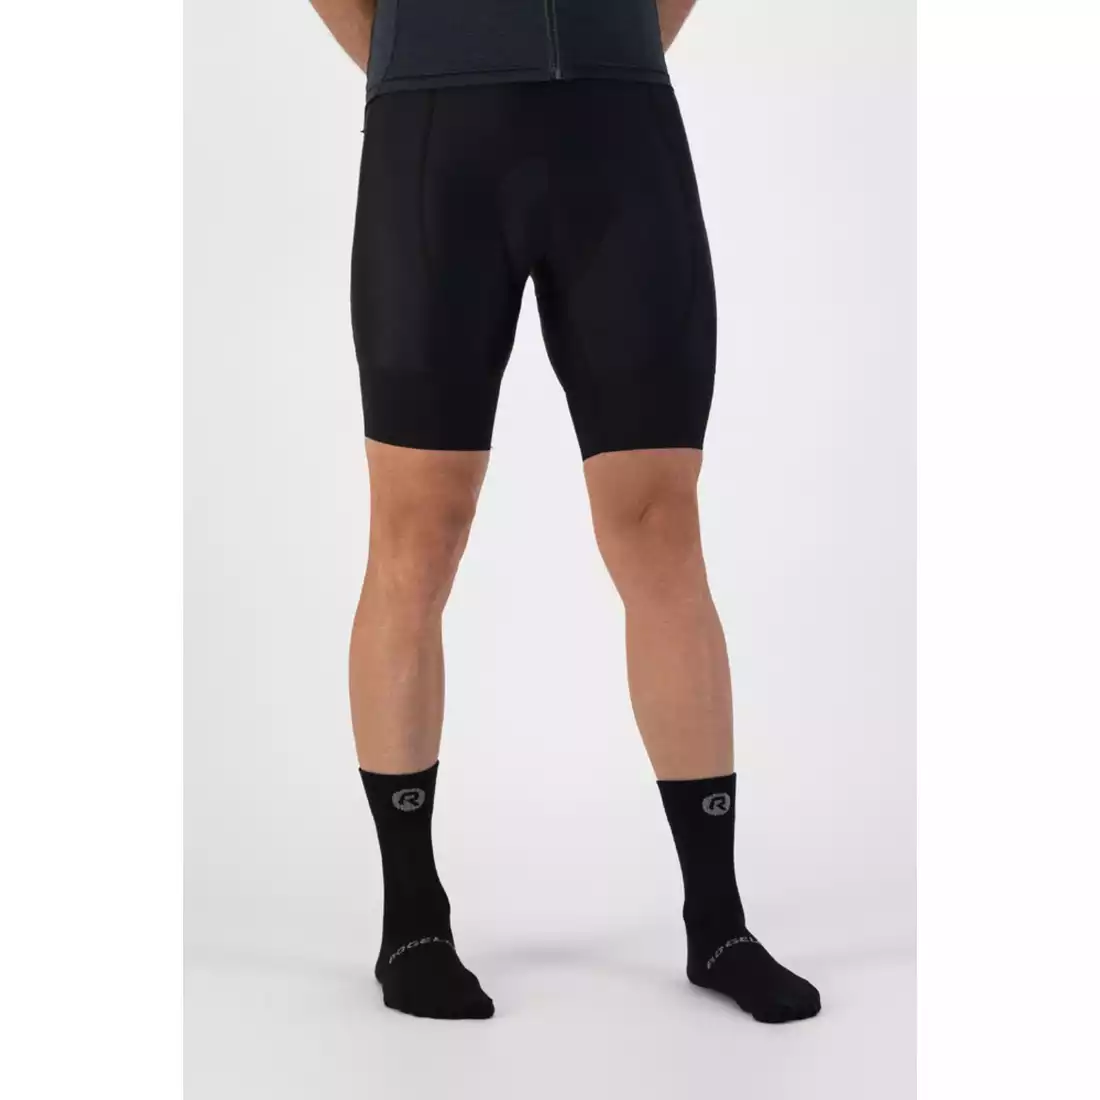 ROGELLI CORE Coolmax sports socks, black